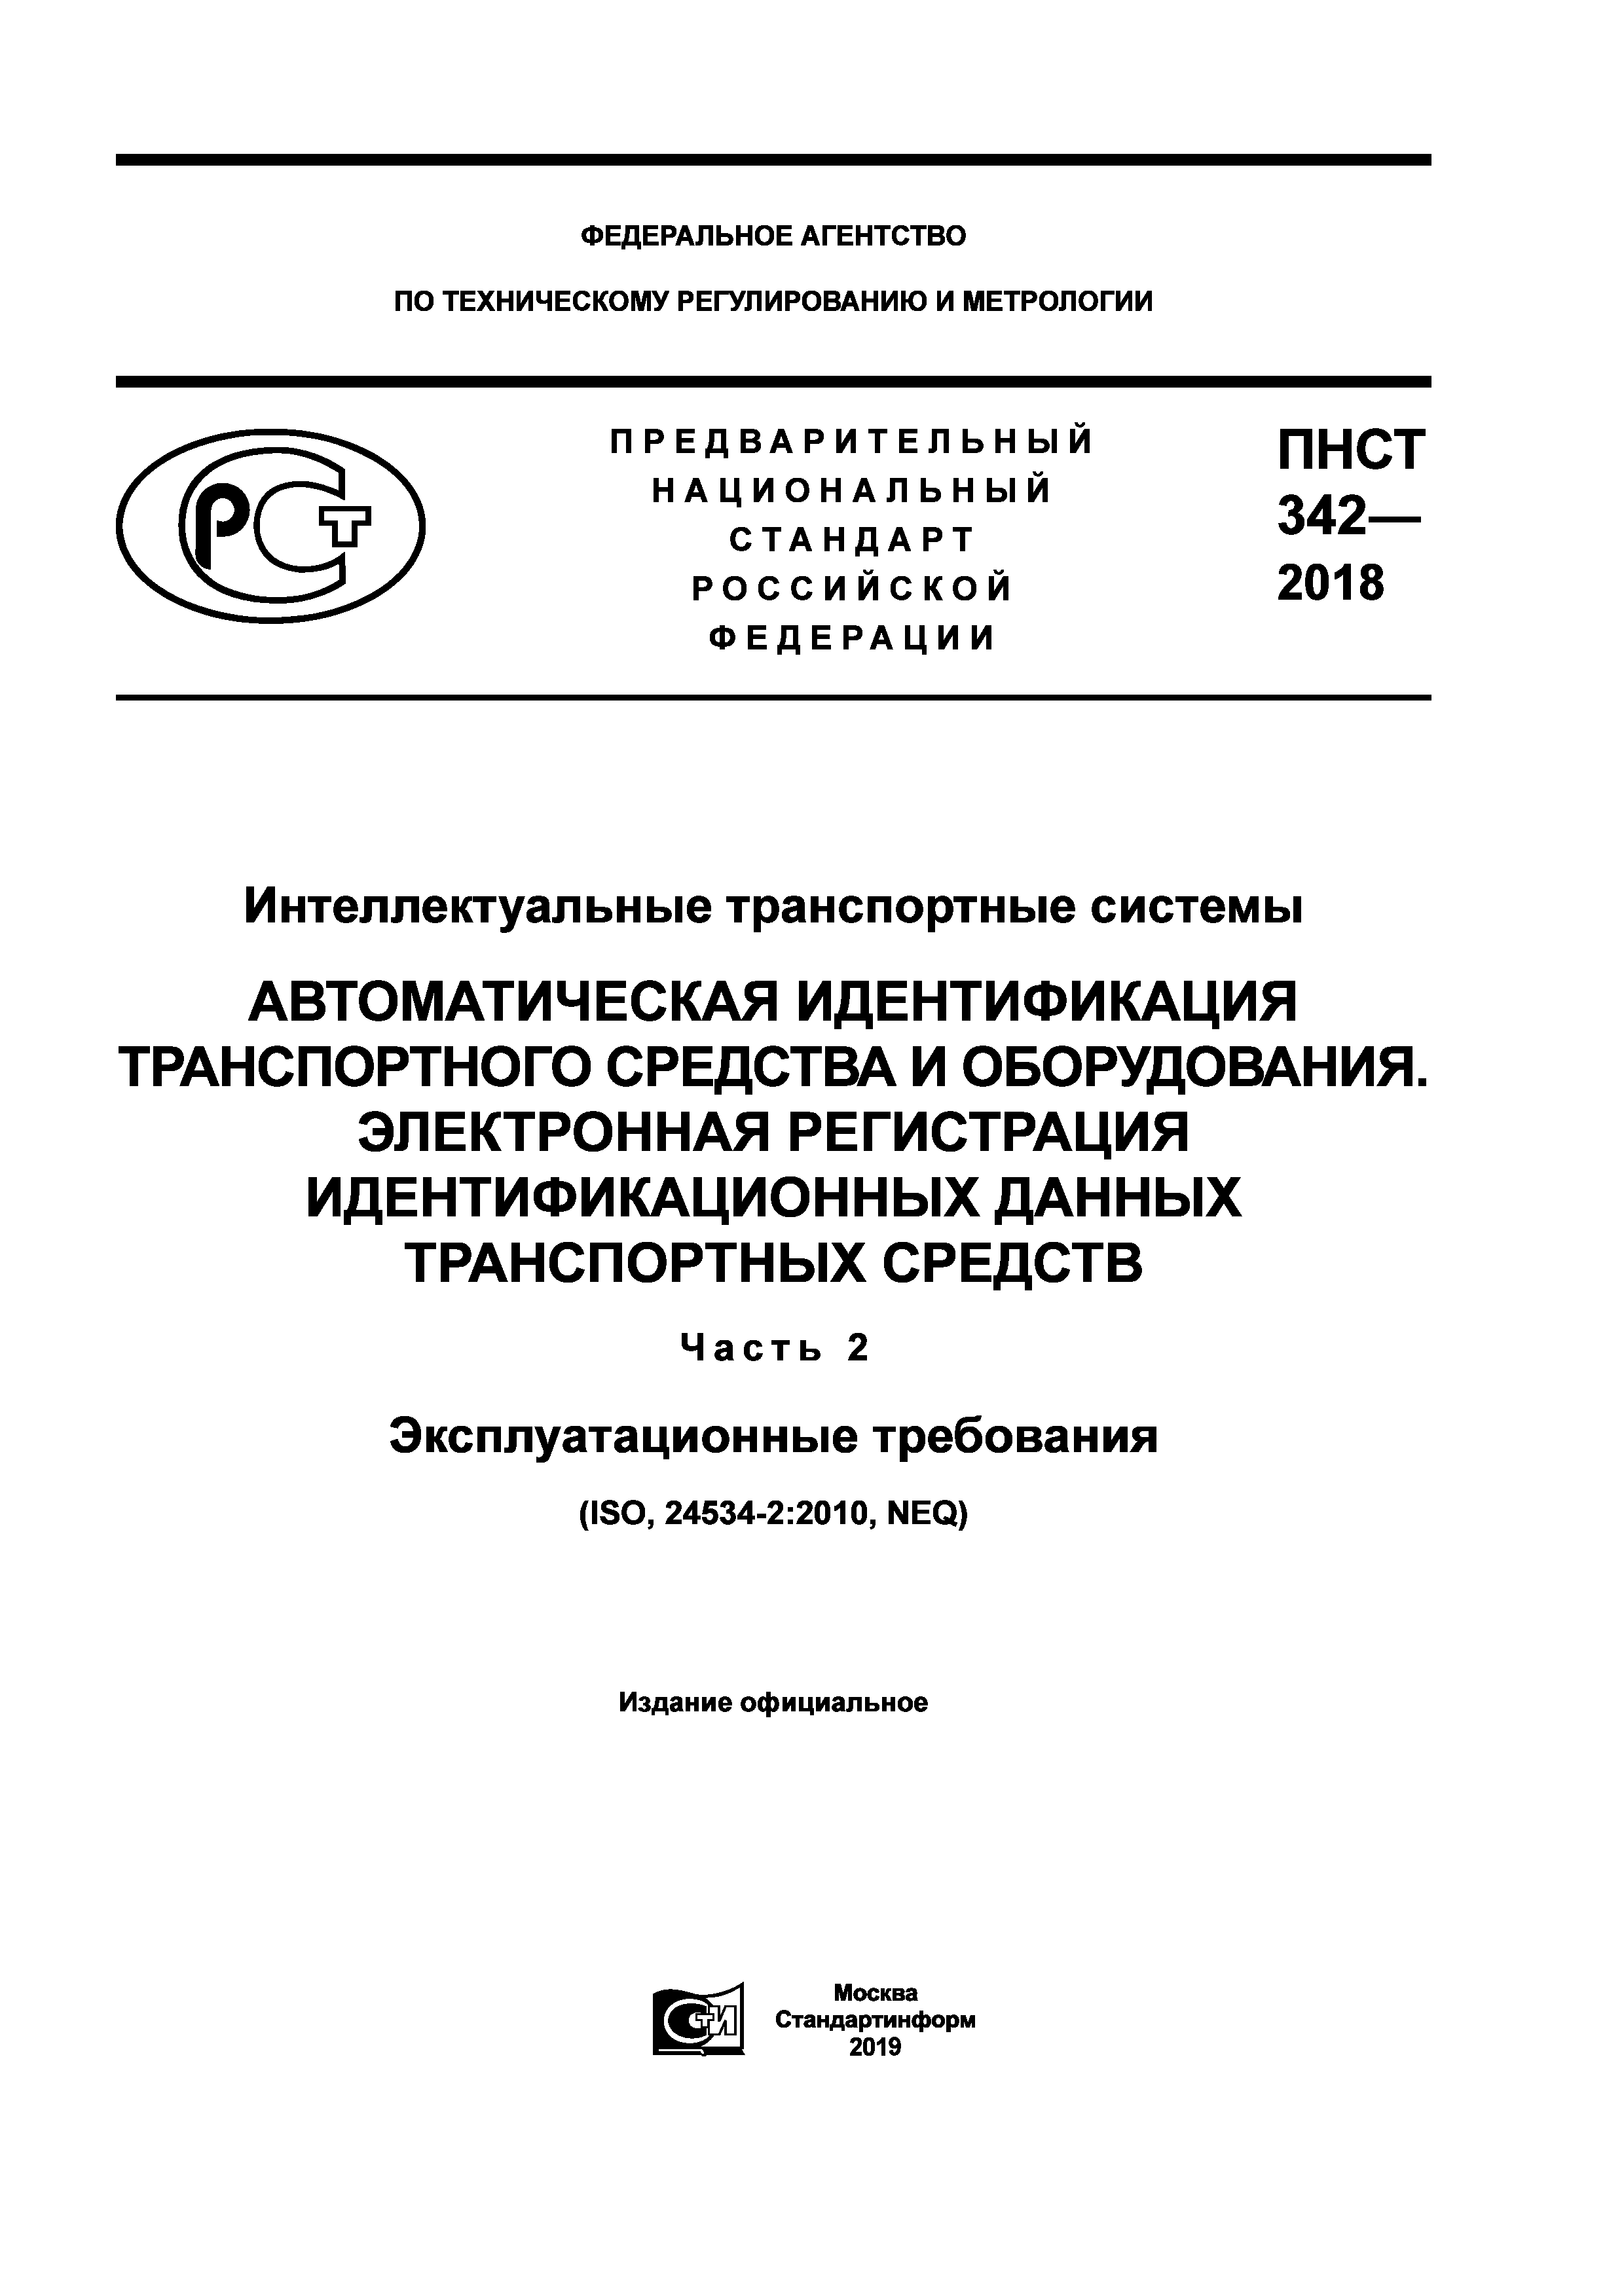 ПНСТ 342-2018